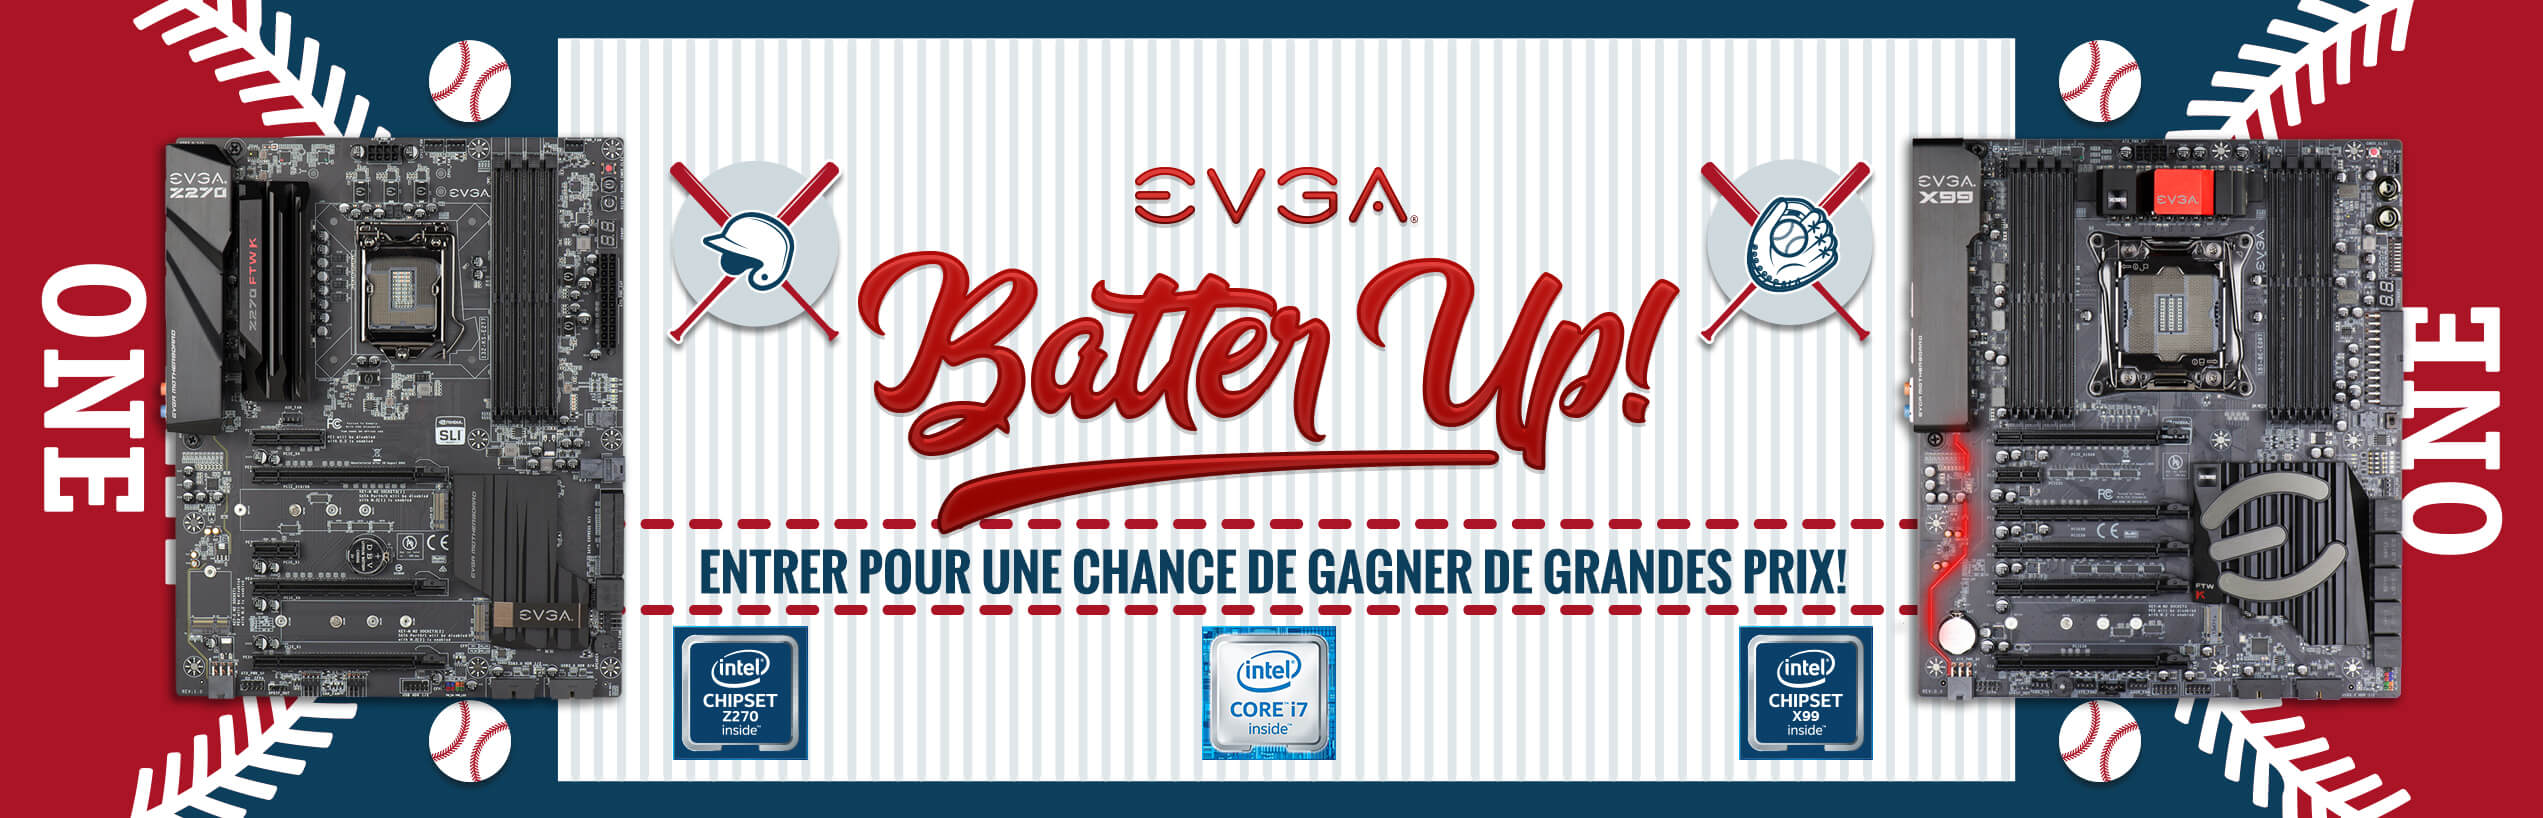 EVGA Batter Up! un événement